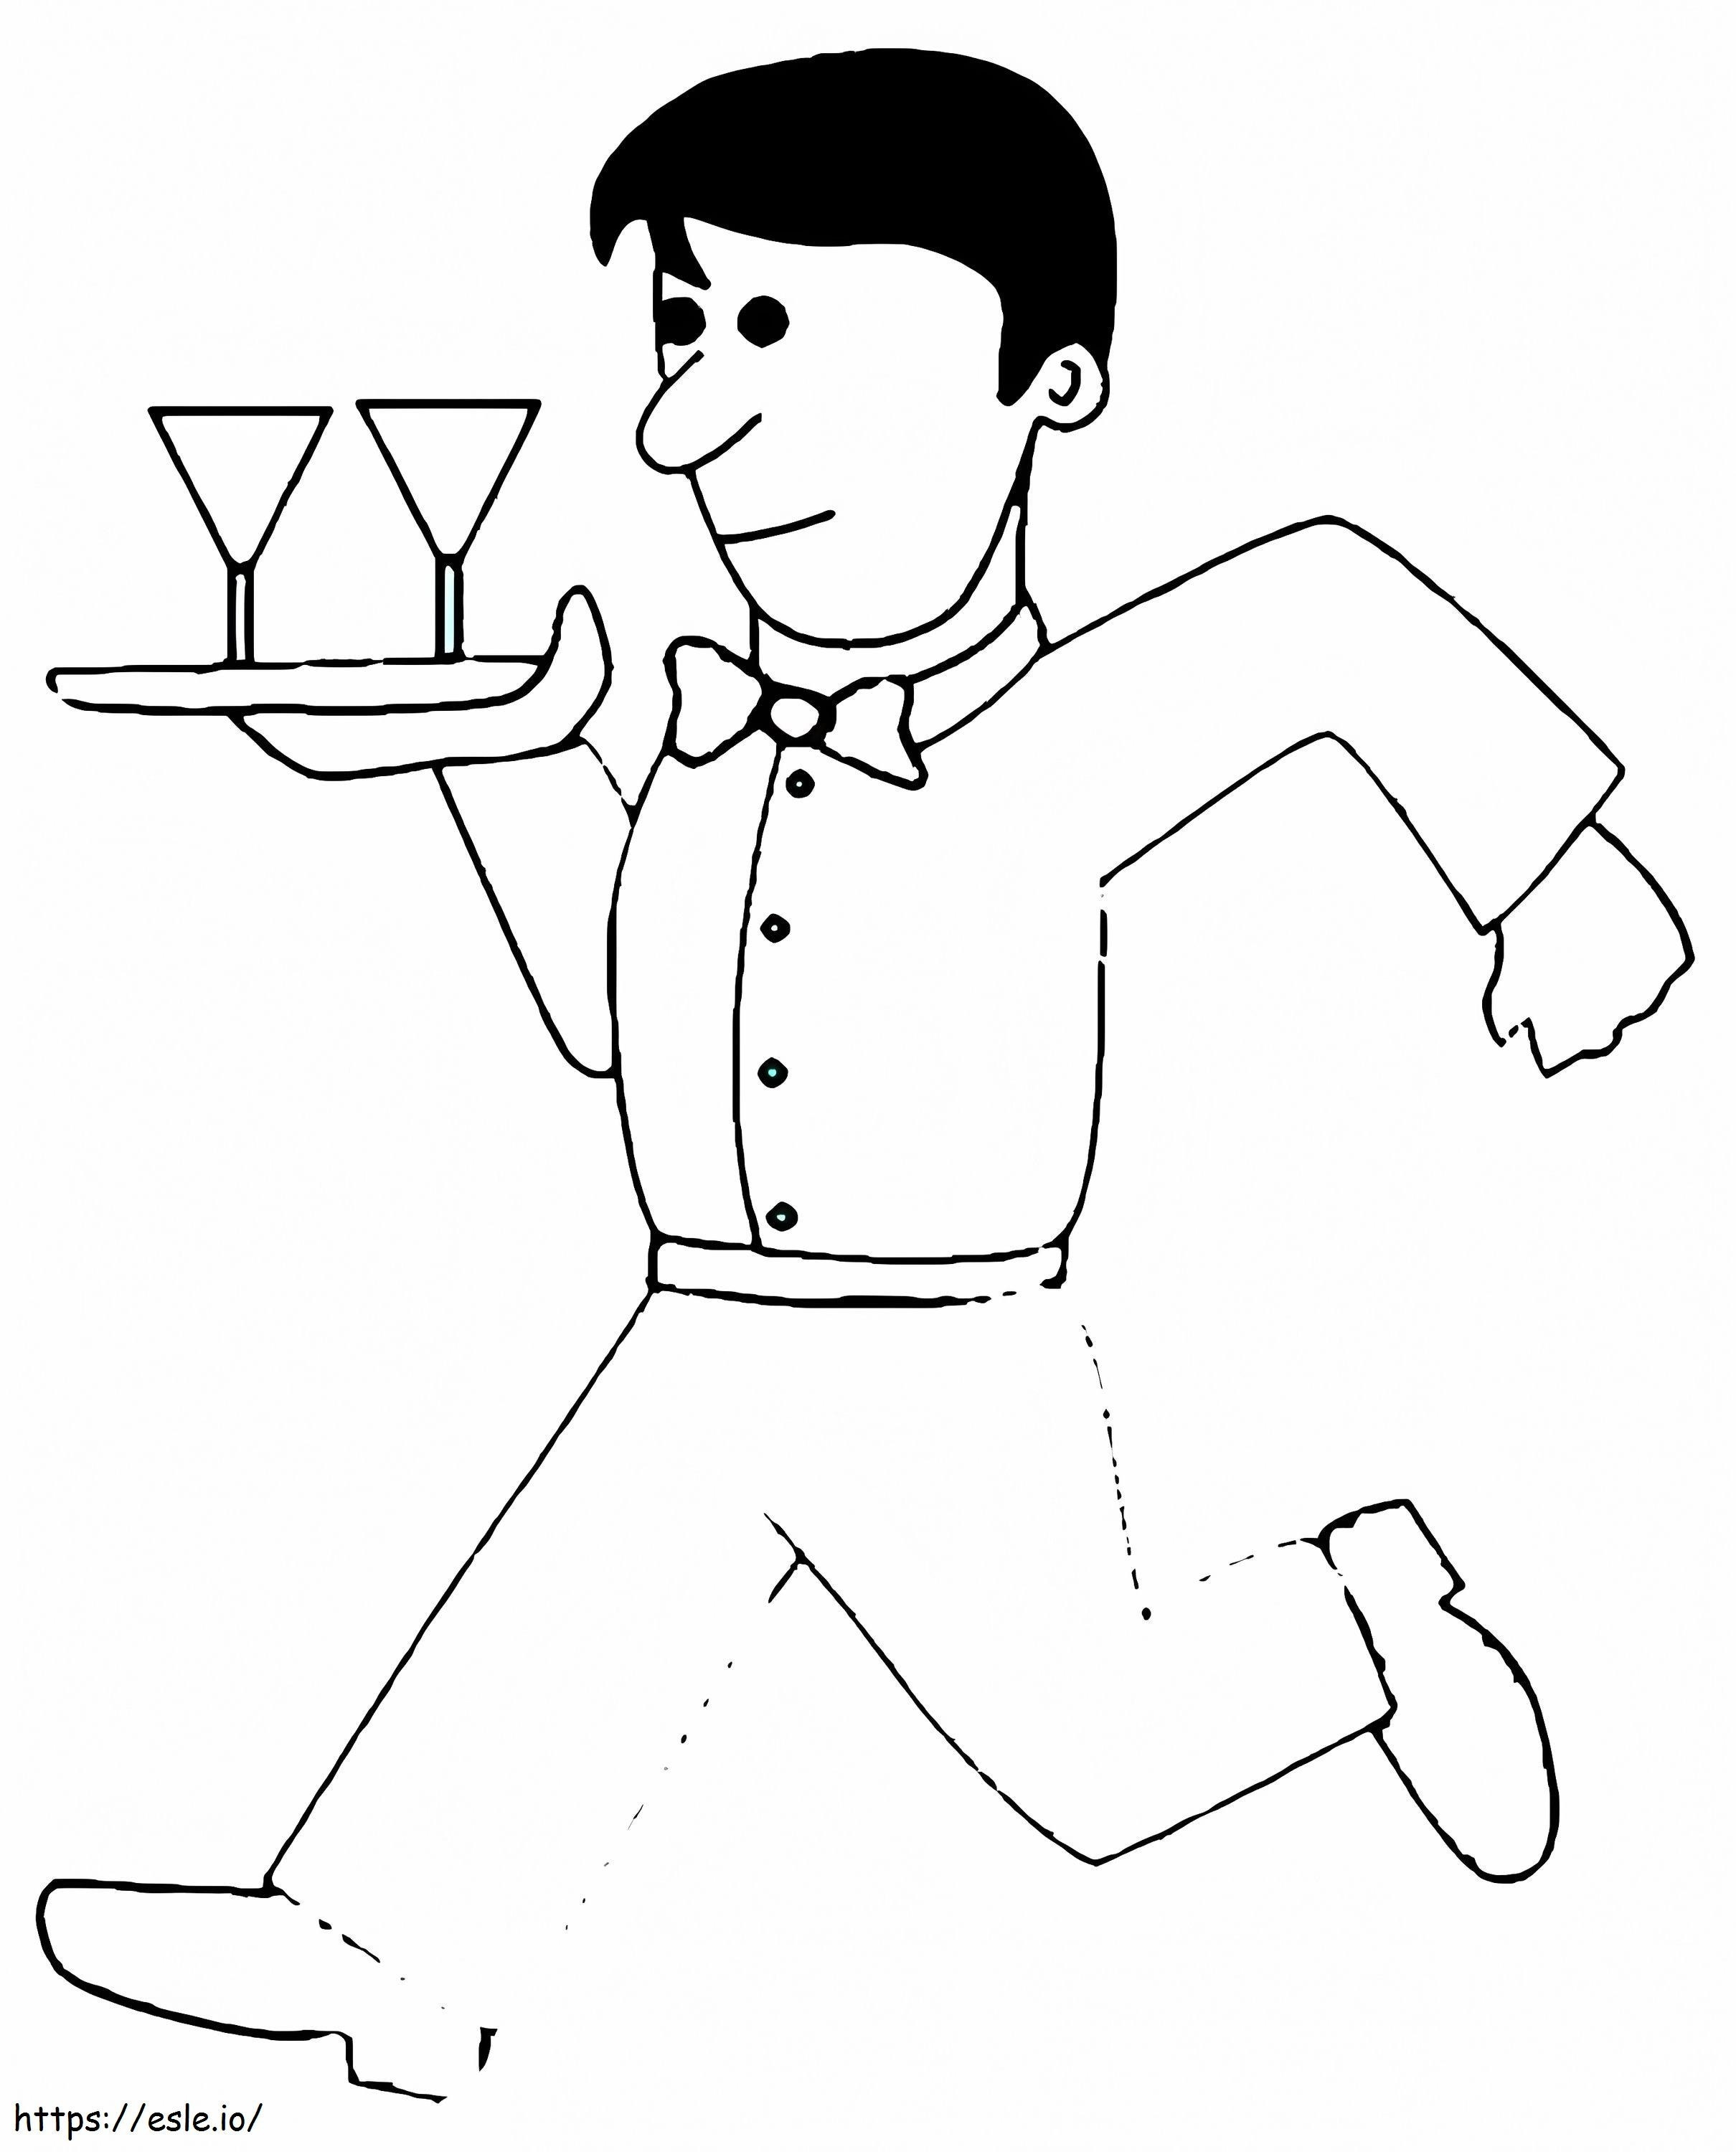 Kelner biegnie kolorowanka